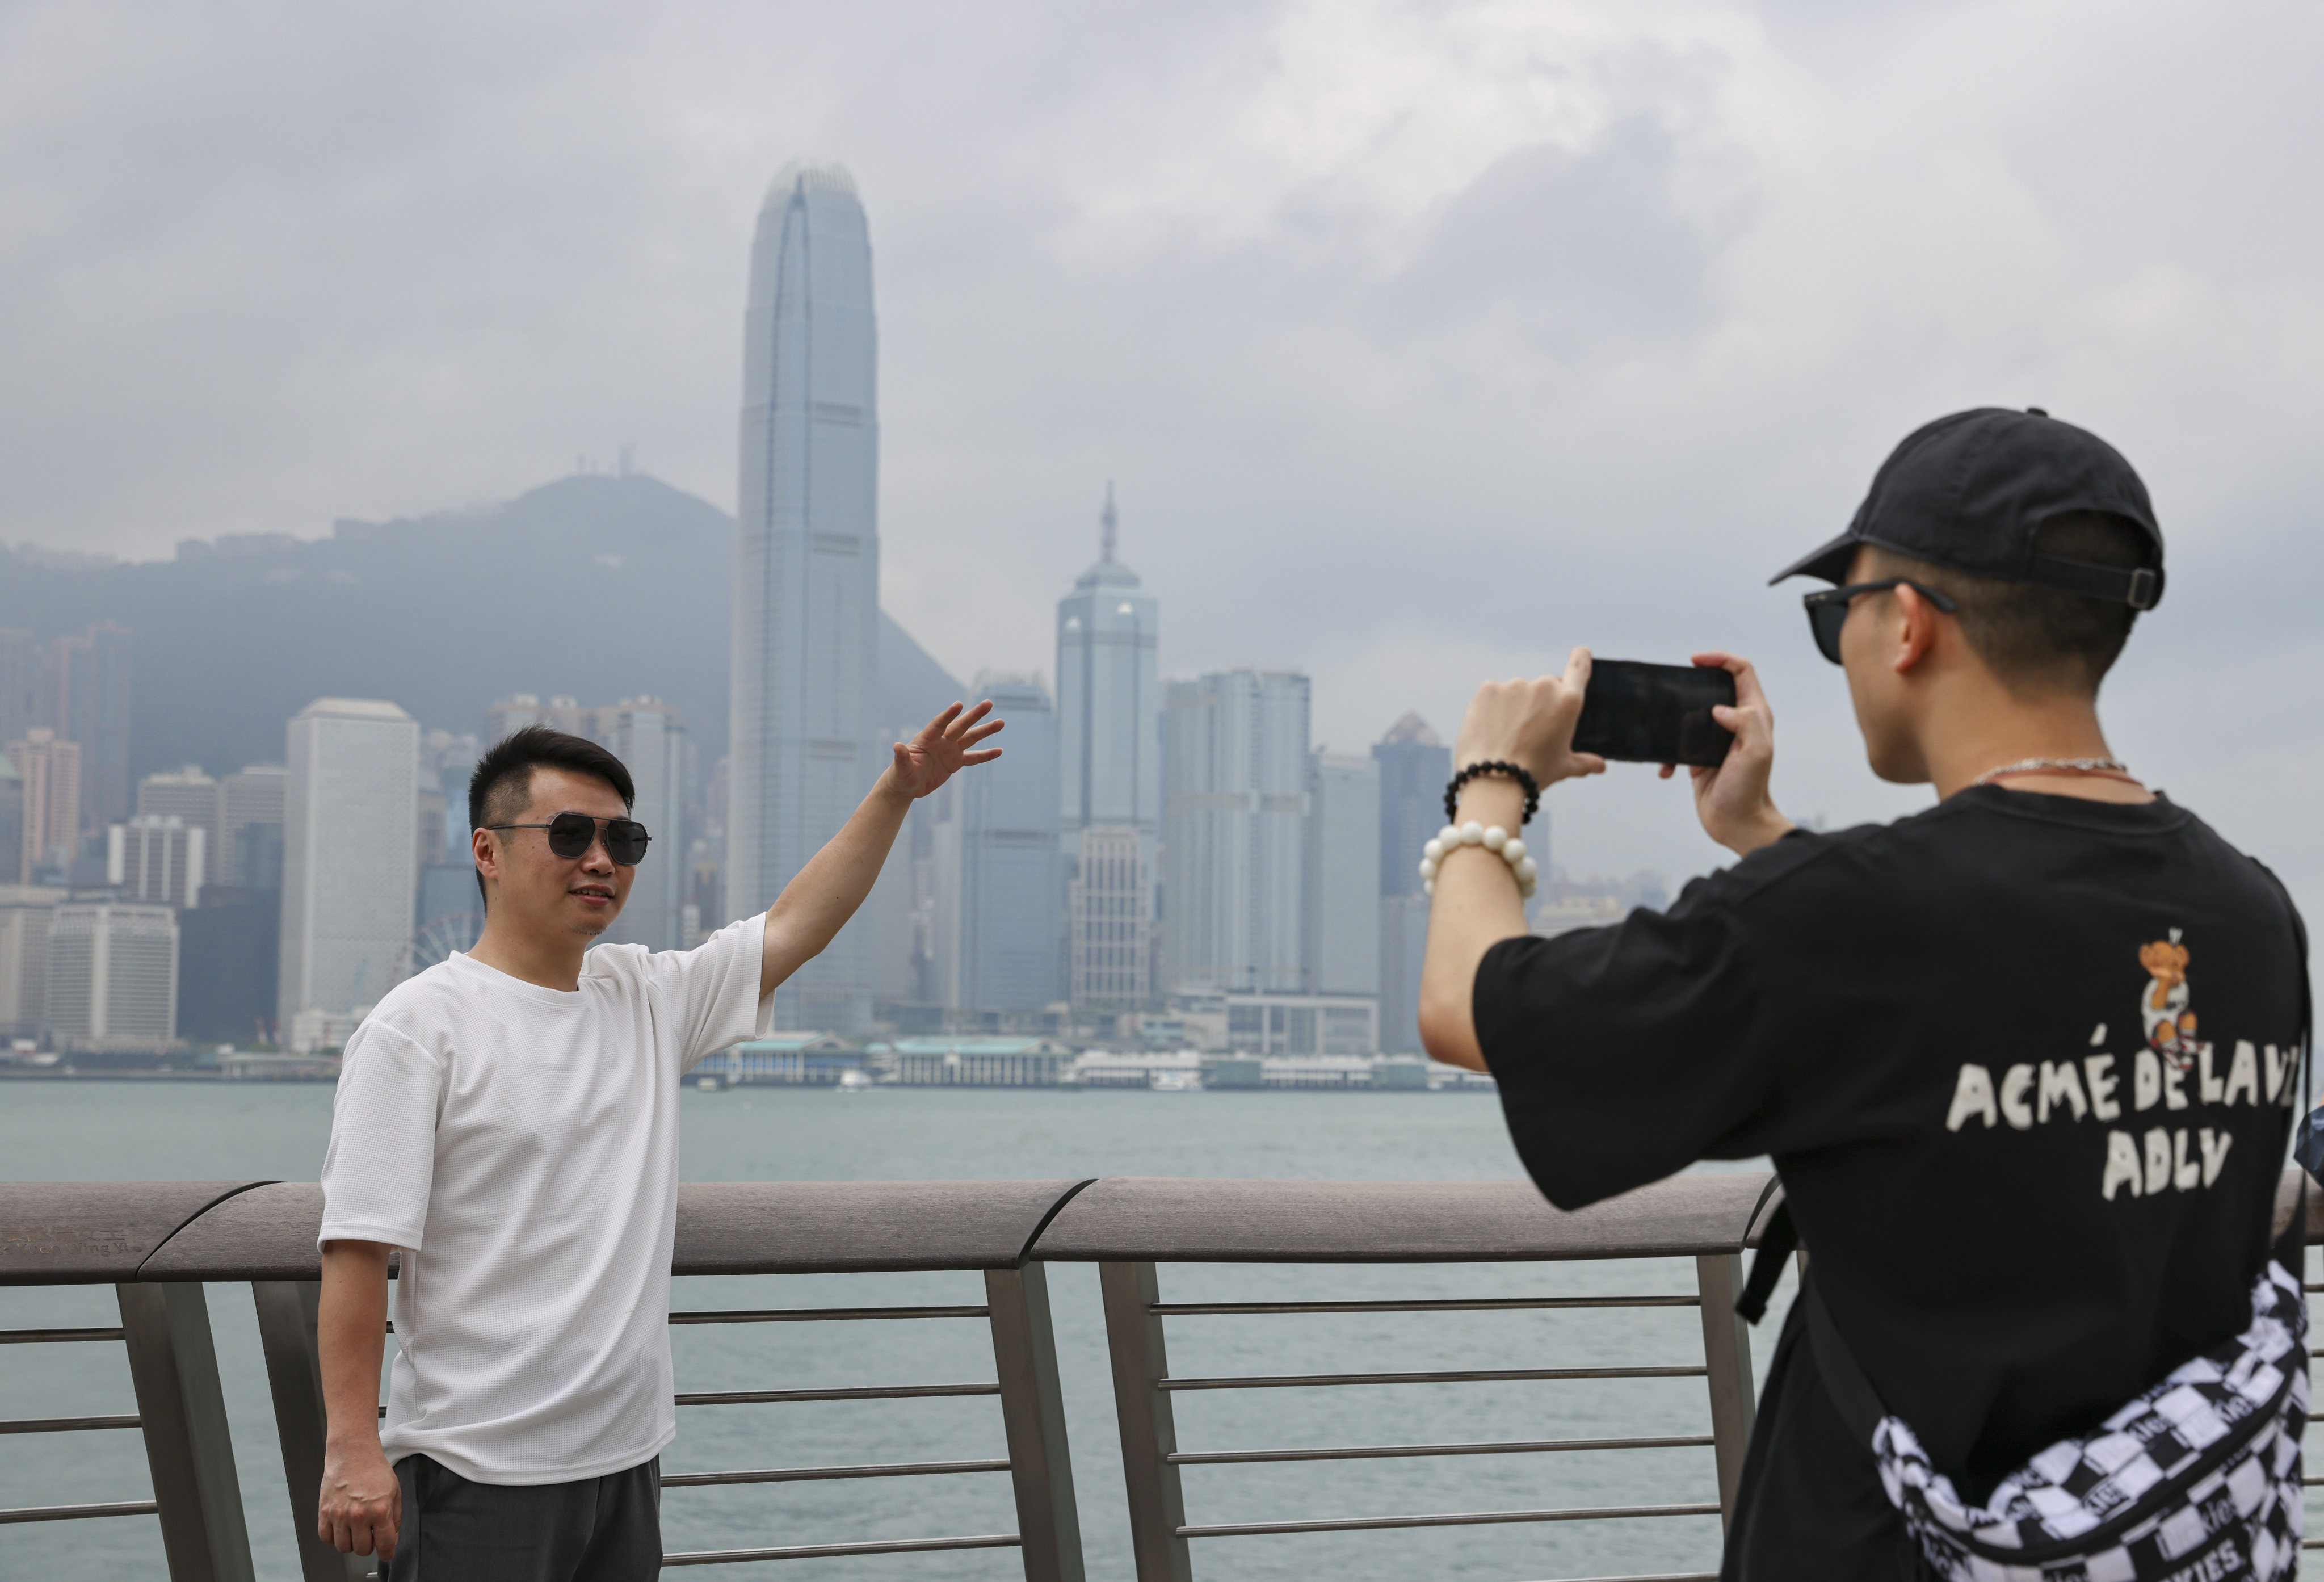 Mainland tourists Zeng Hui (left) and Chen Jiayi follow a trend on Xiaohongshu of recreating a well-known photo of Hong Kong billionaire Li Ka-shing. Photo: May Tse